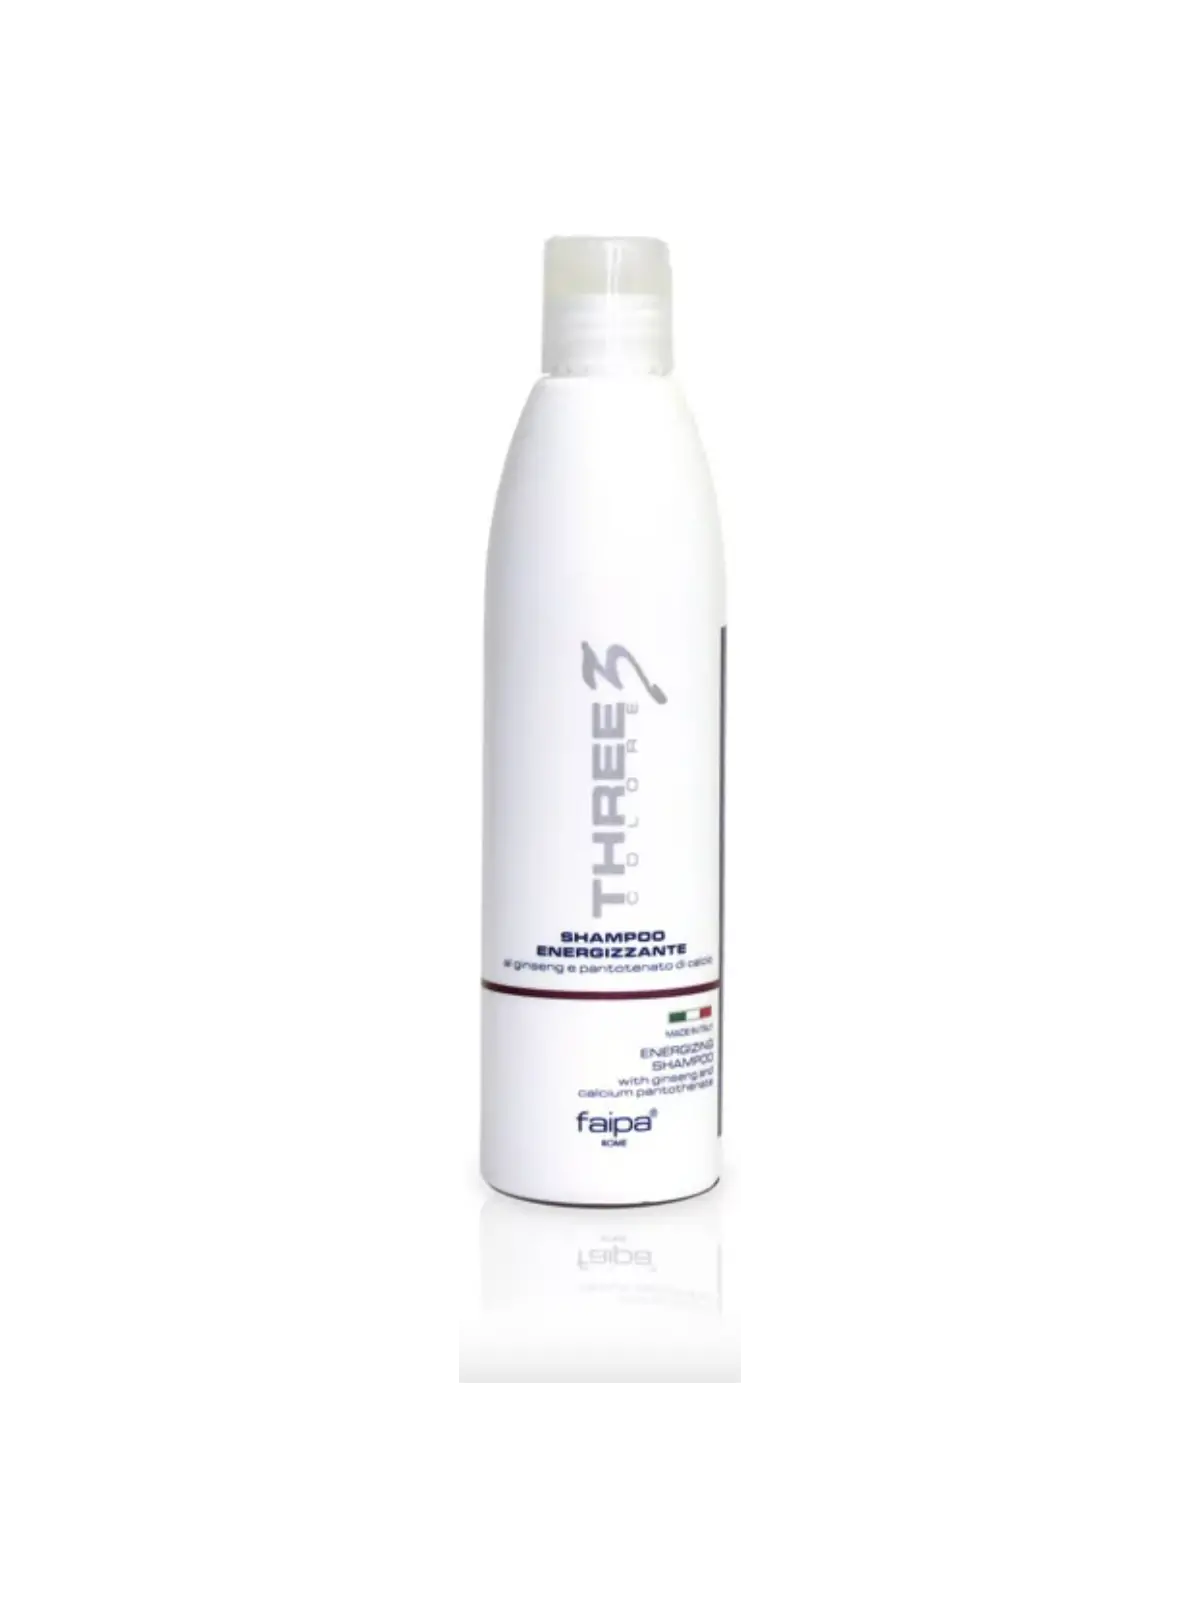 Faipa Three shampoo energizzante 250 ml 5,39 € -30%